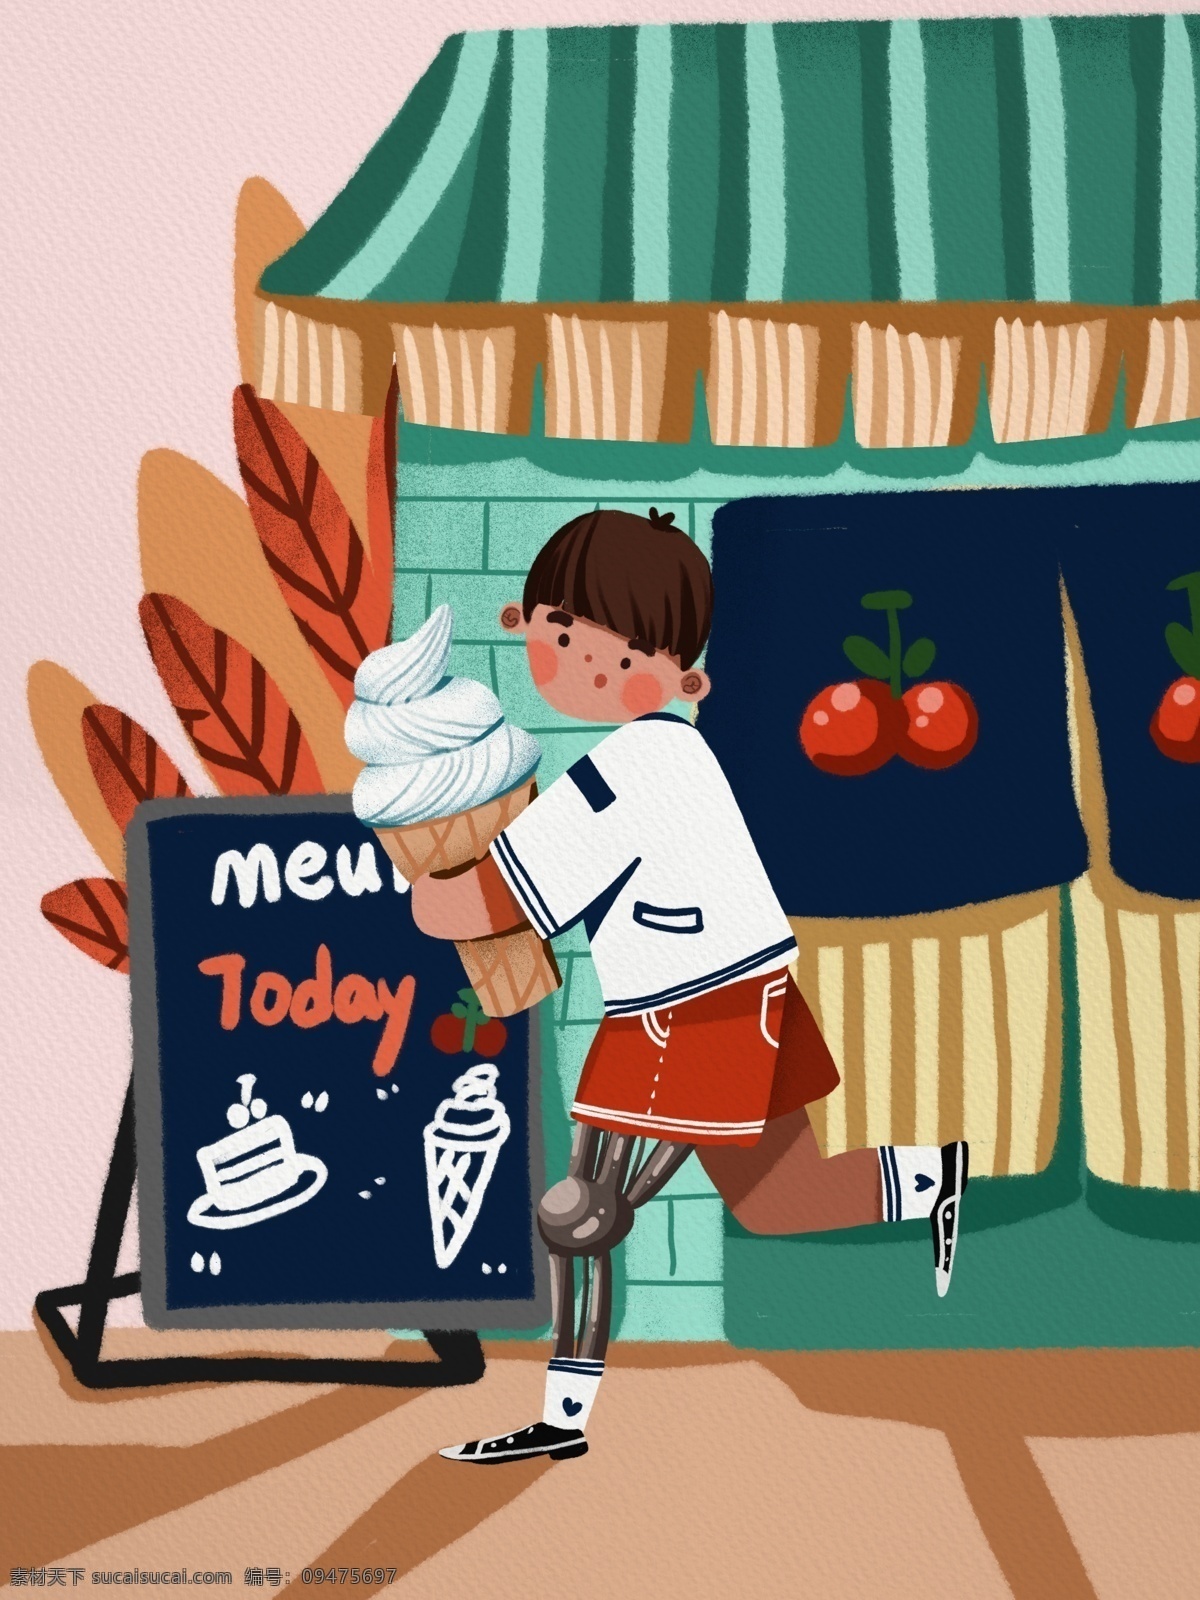 国际 残疾 人日 男孩 冰淇淋 店 打工 可爱 插画 残疾人 温馨 国际残疾人日 菜单